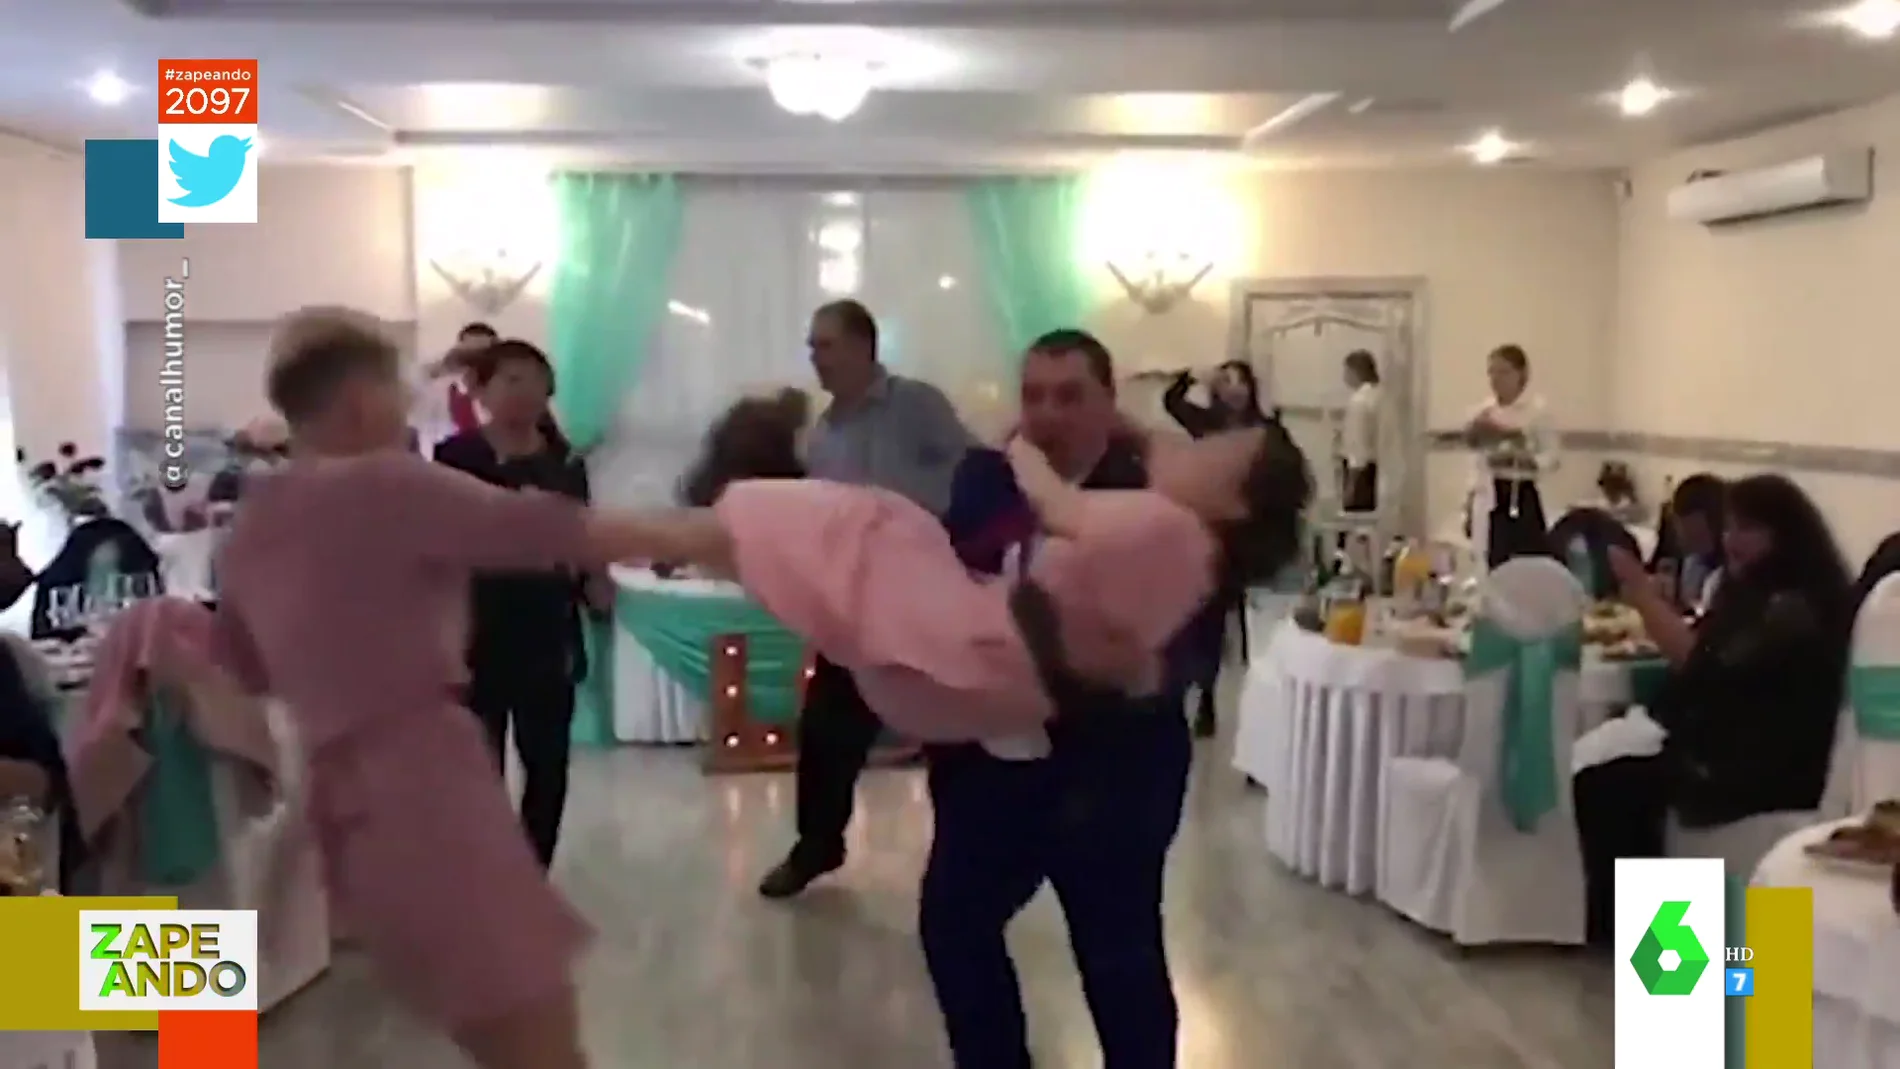 El momento en el que una mujer cae al suelo después de recibir una patada en la cara durante una boda 